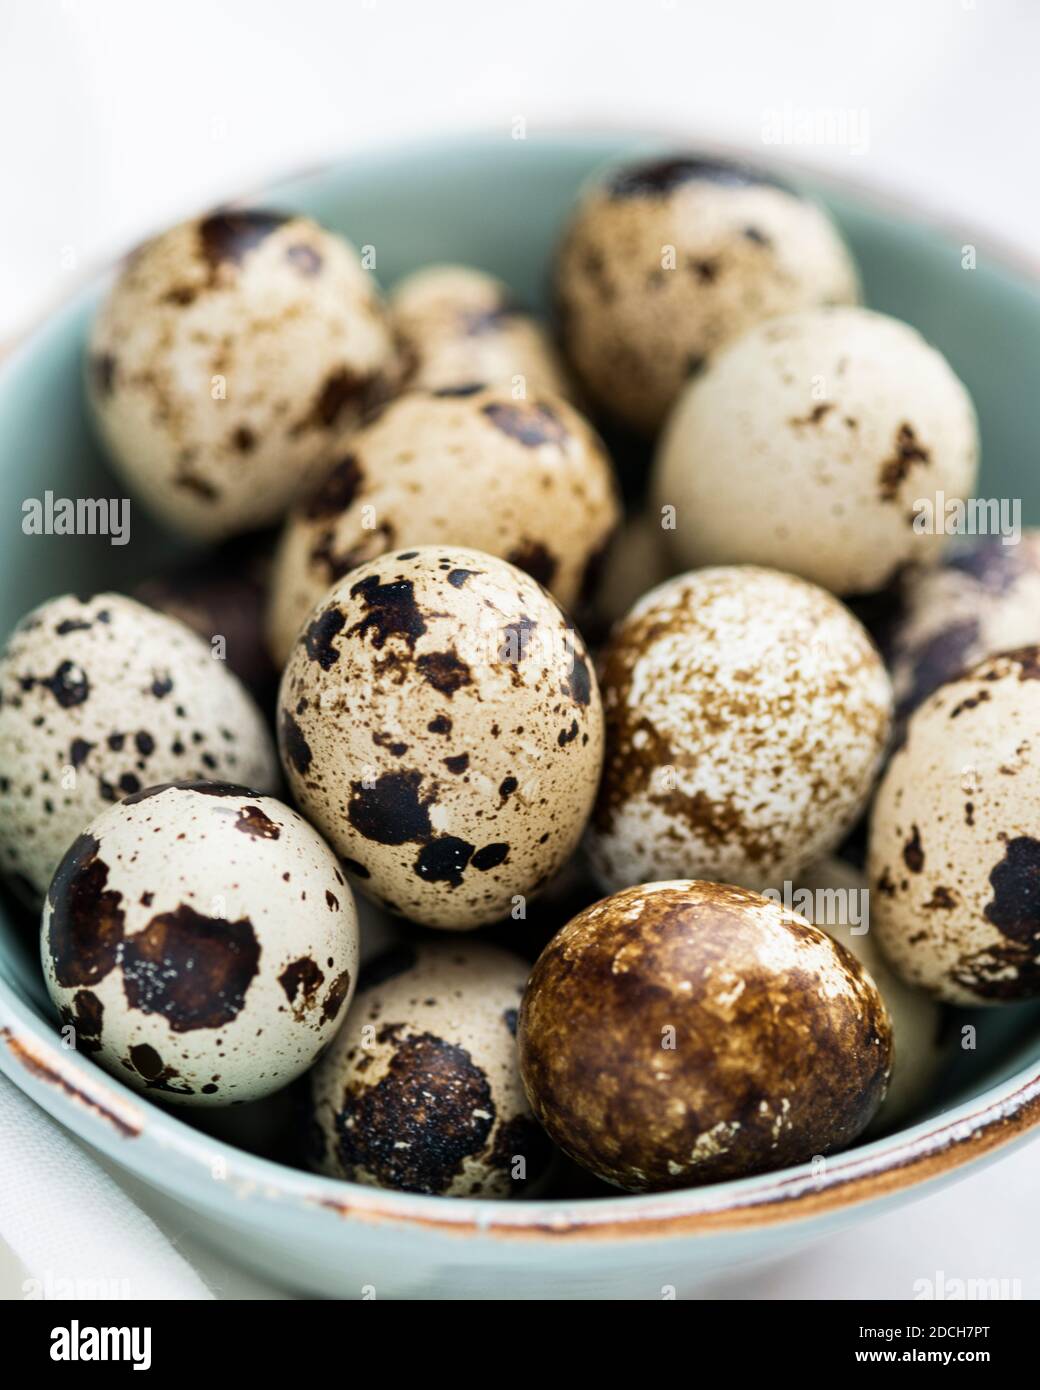 Uova di quaglia in ciotola verde, uova di quaglia, mucchio di uova di quaglie in ciotola, ciotola piccola piena di uova piccole, uova macchiate in ciotola, uova di quaglia in ciotola Foto Stock